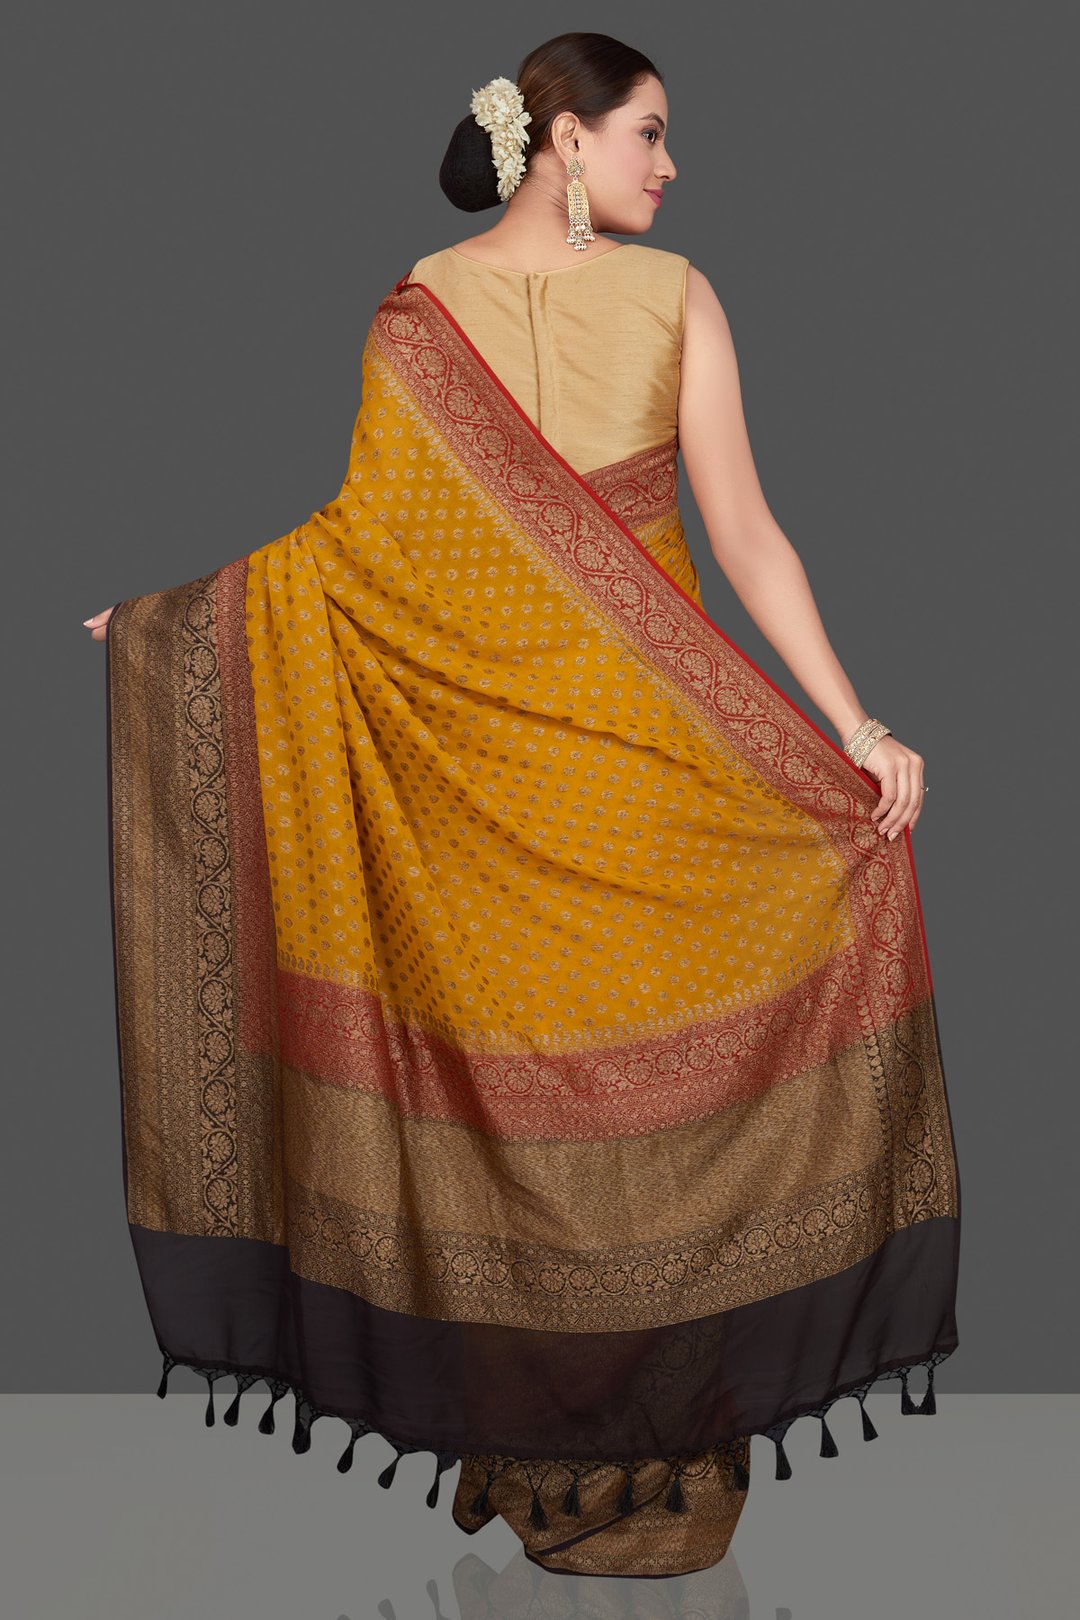 Georgette banarasi handloom antique zari work saree in golden color